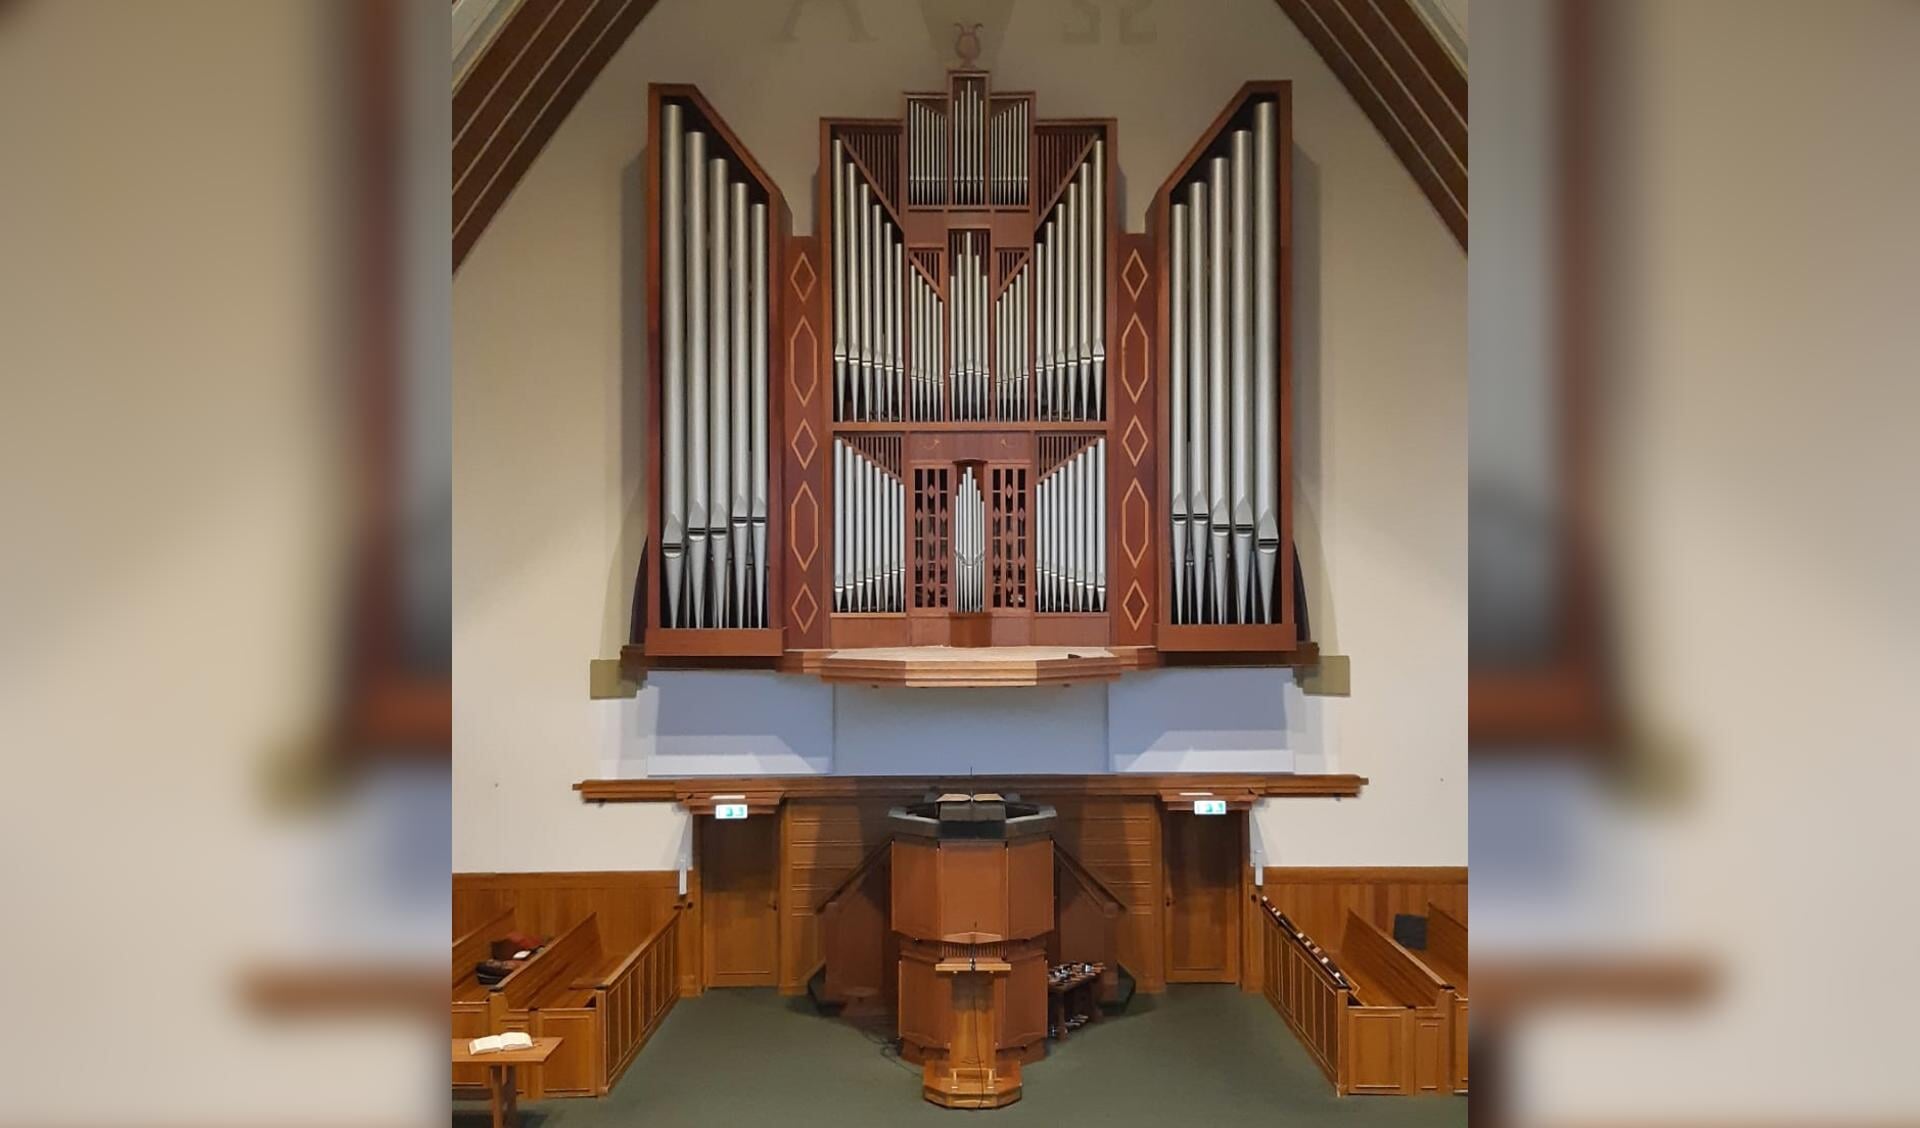 Het Pels-orgel (1945) in de Dorpskerk leent zich uitstekend om de breedte in stijlen te vertolken. 